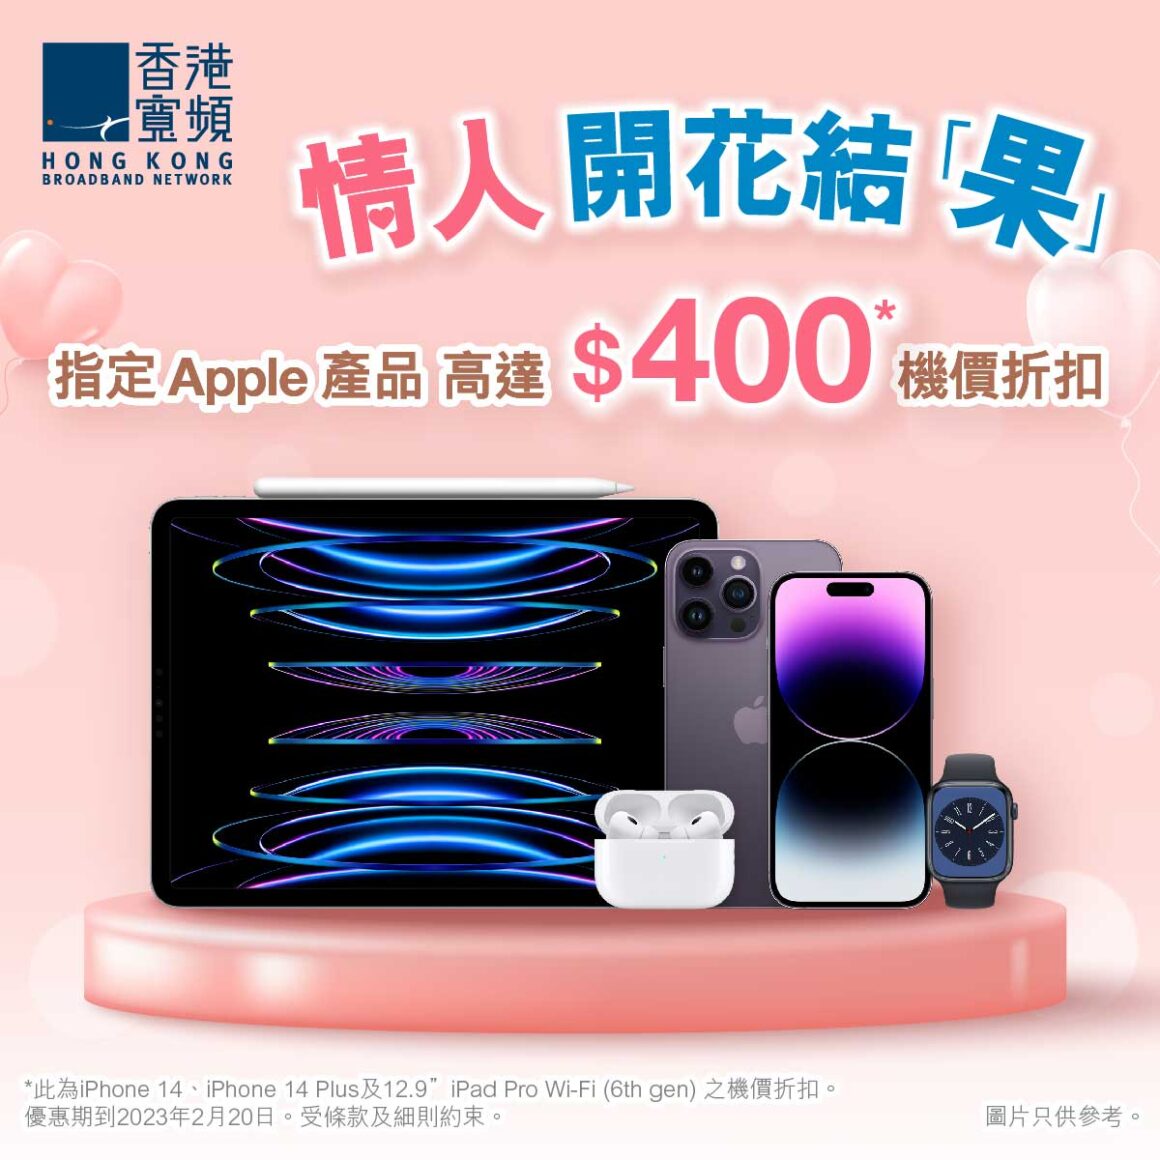 香港寬頻由即日起至 2 月 20 日推出多款 Apple 人氣產品折扣優惠，其中購買 iPhone 14 系列產品更可享高達 $400 折扣優惠。